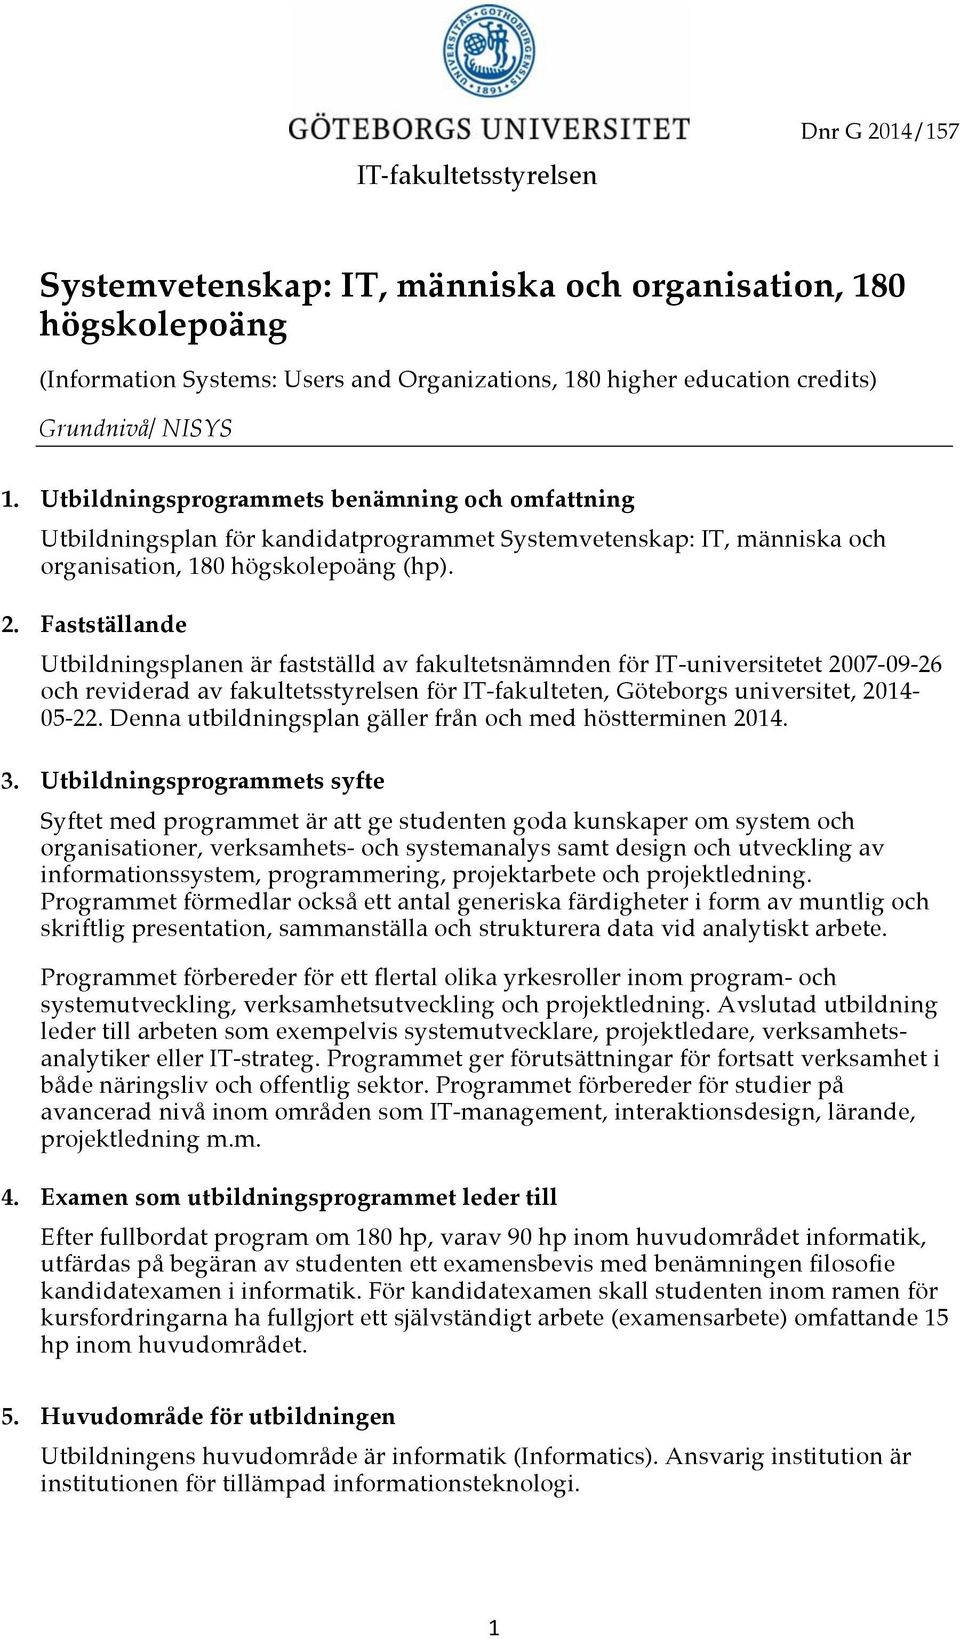 Fastställande Utbildningsplanen är fastställd av fakultetsnämnden för IT-universitetet 2007-09-26 och reviderad av fakultetsstyrelsen för IT-fakulteten, Göteborgs universitet, 2014-05-22.